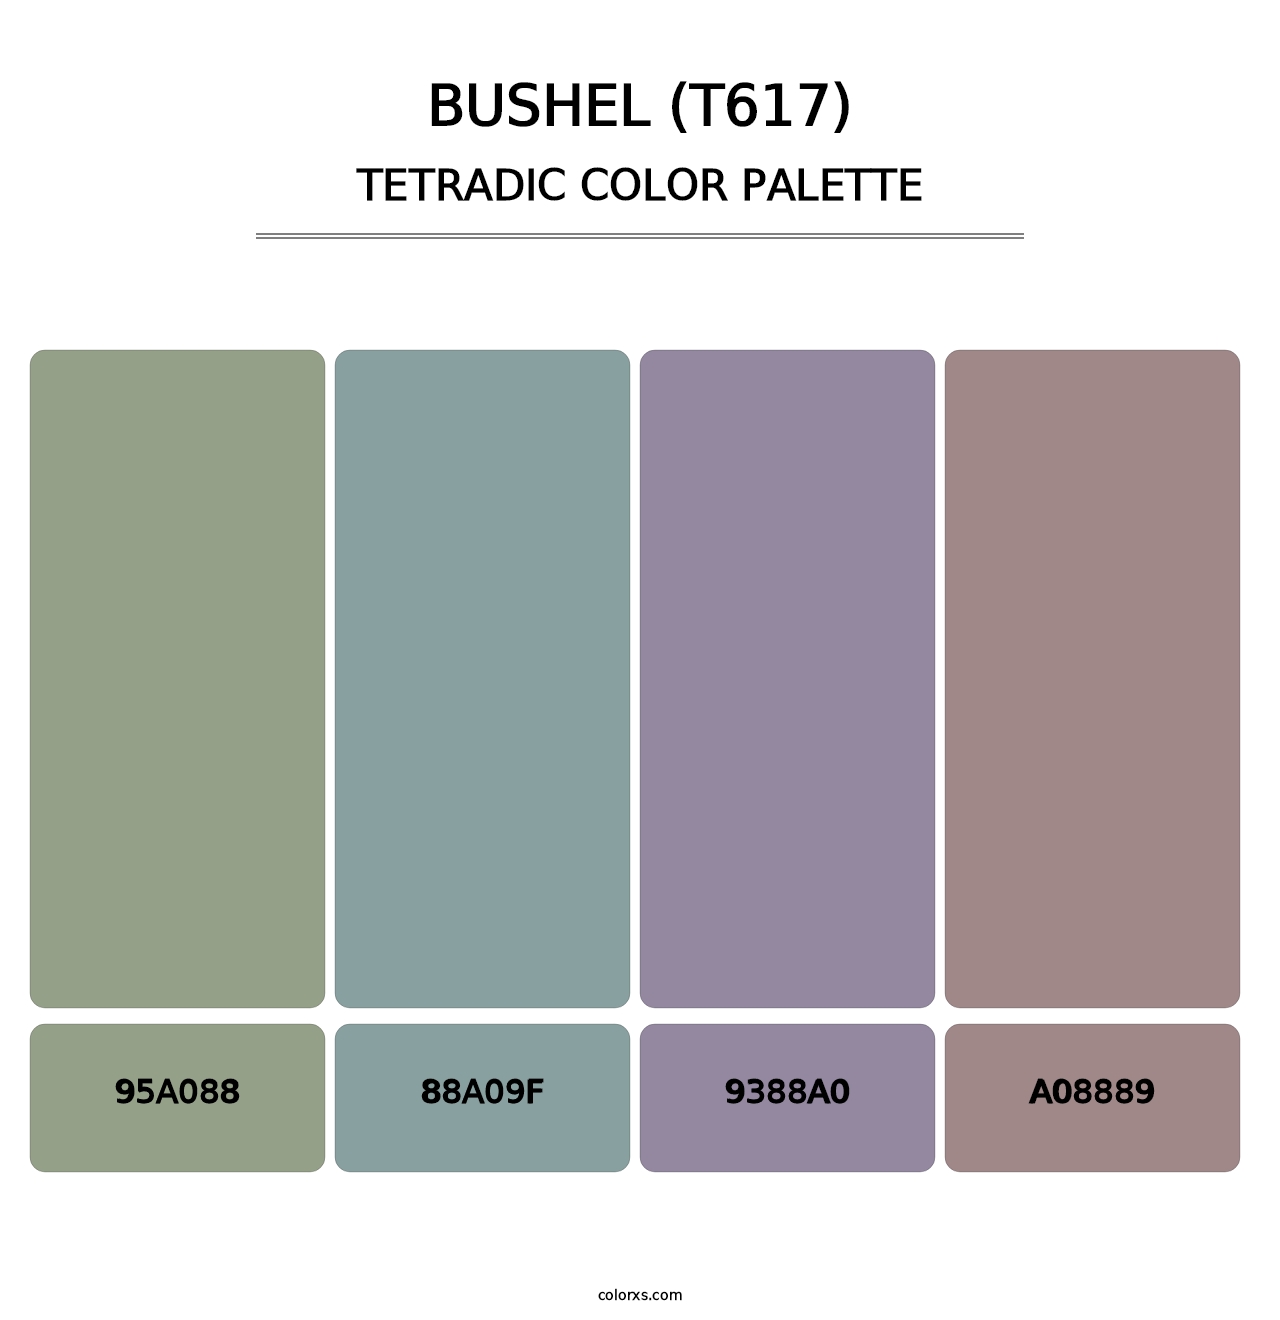 Bushel (T617) - Tetradic Color Palette